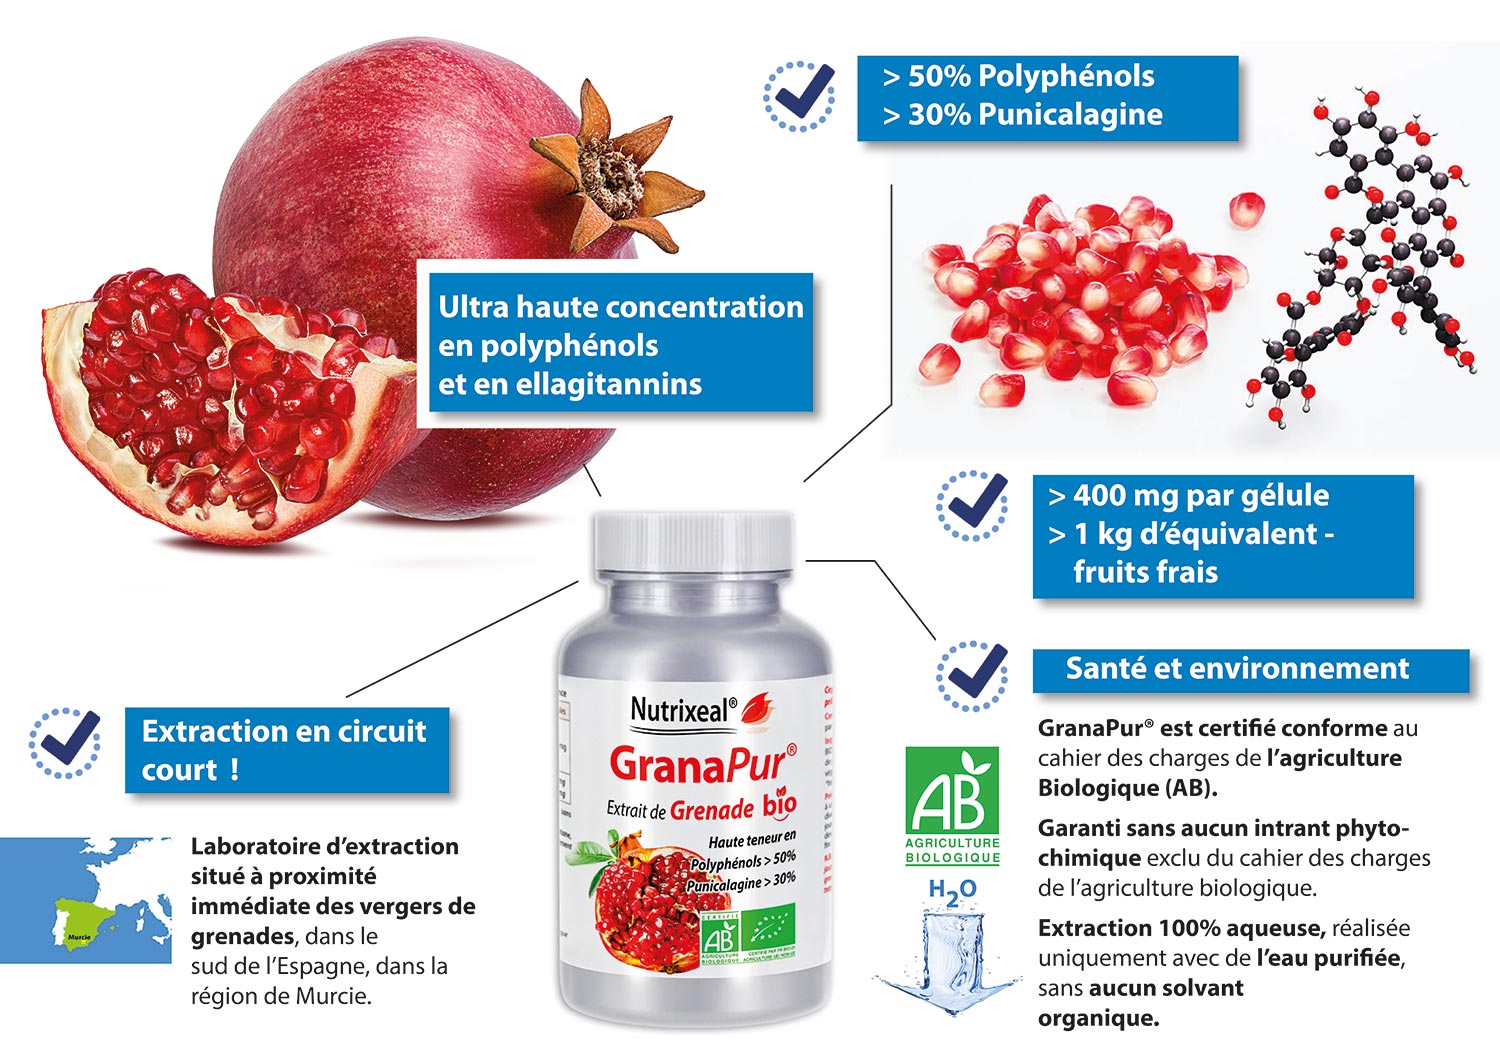 Les points forts de GranaPur, un complément alimentaire à base de grenade Ultra haute concentration en polyphénols et en ellagitannins, >50% de polyphénols et >30% de punicalagine, >400 mg par gélule, >1 kg d'équivalent -fruits frais, Produit certifié bio 